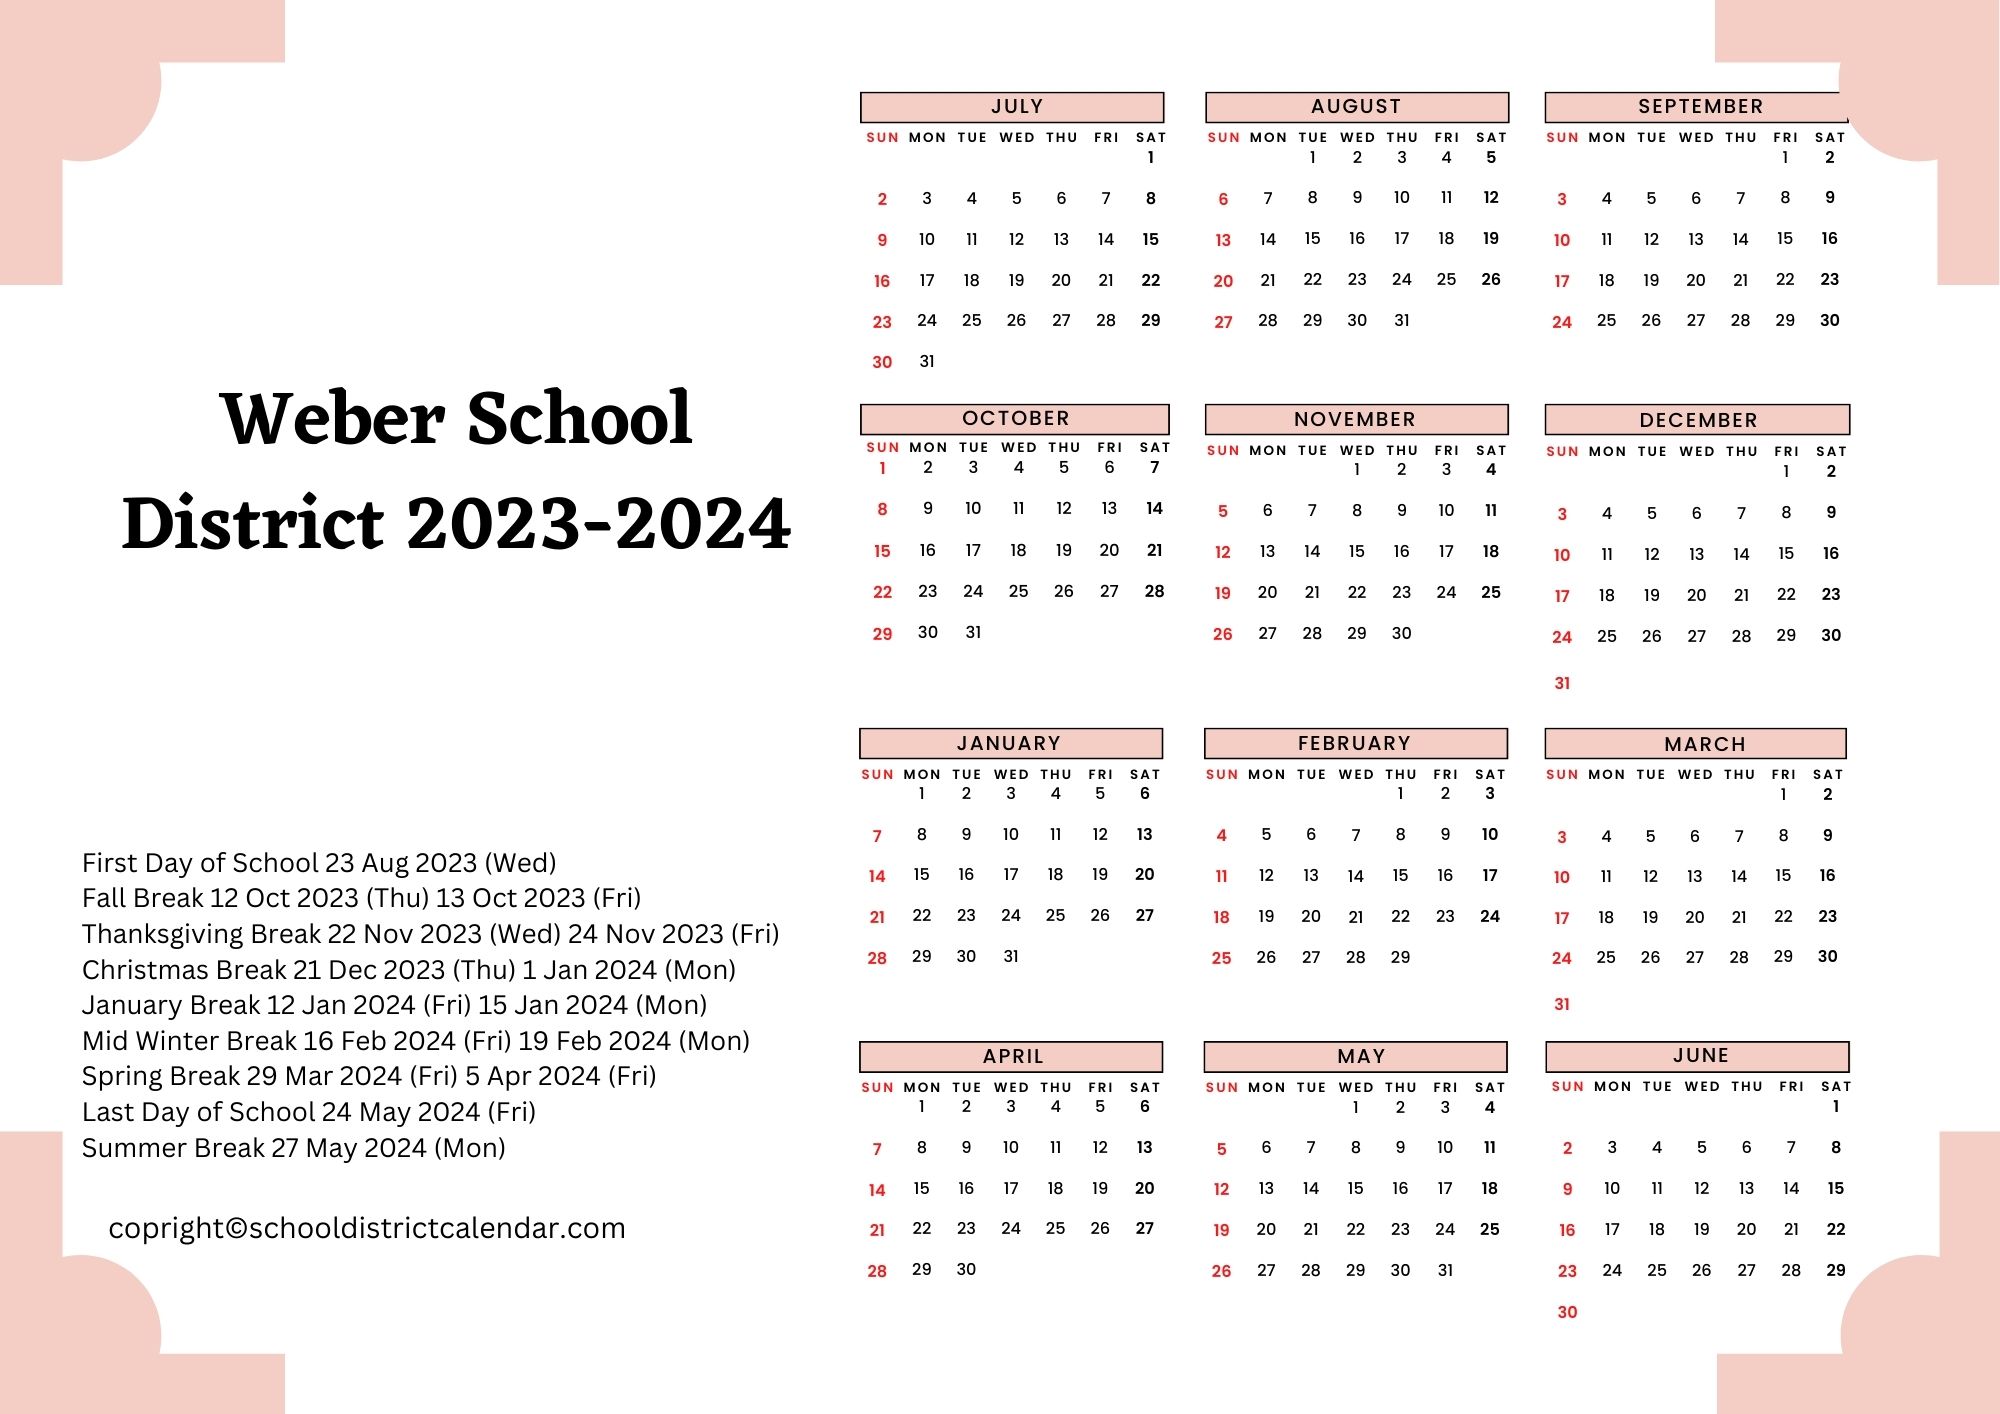 Weber School District Calendar Holidays 20232024